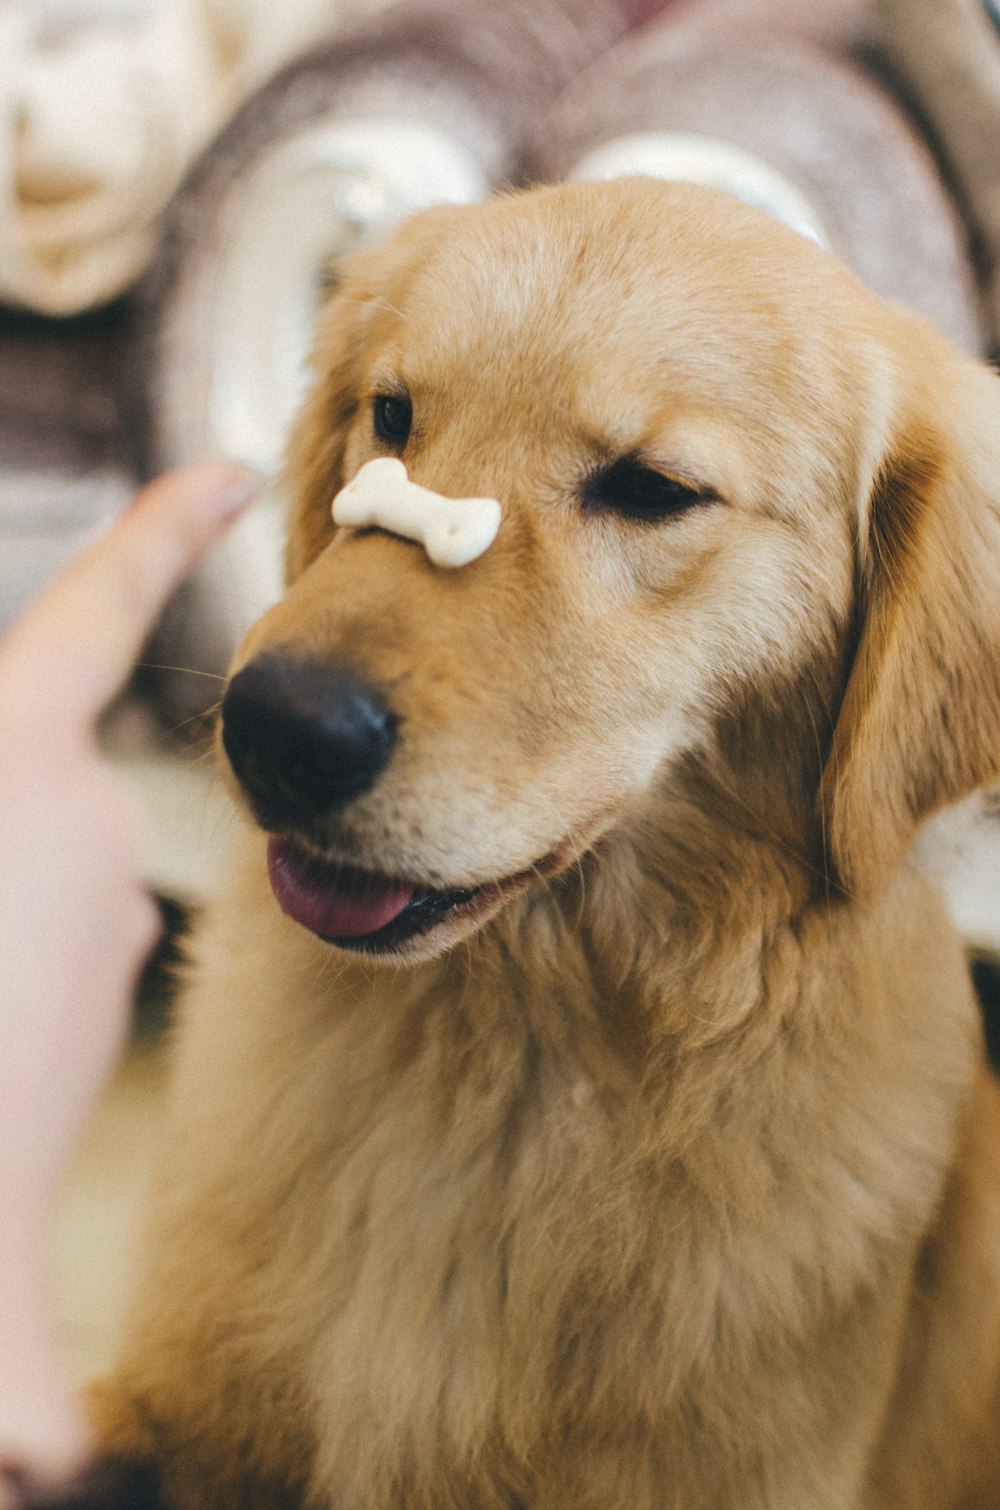 Golden retriever adulto com osso de biscoito no nariz